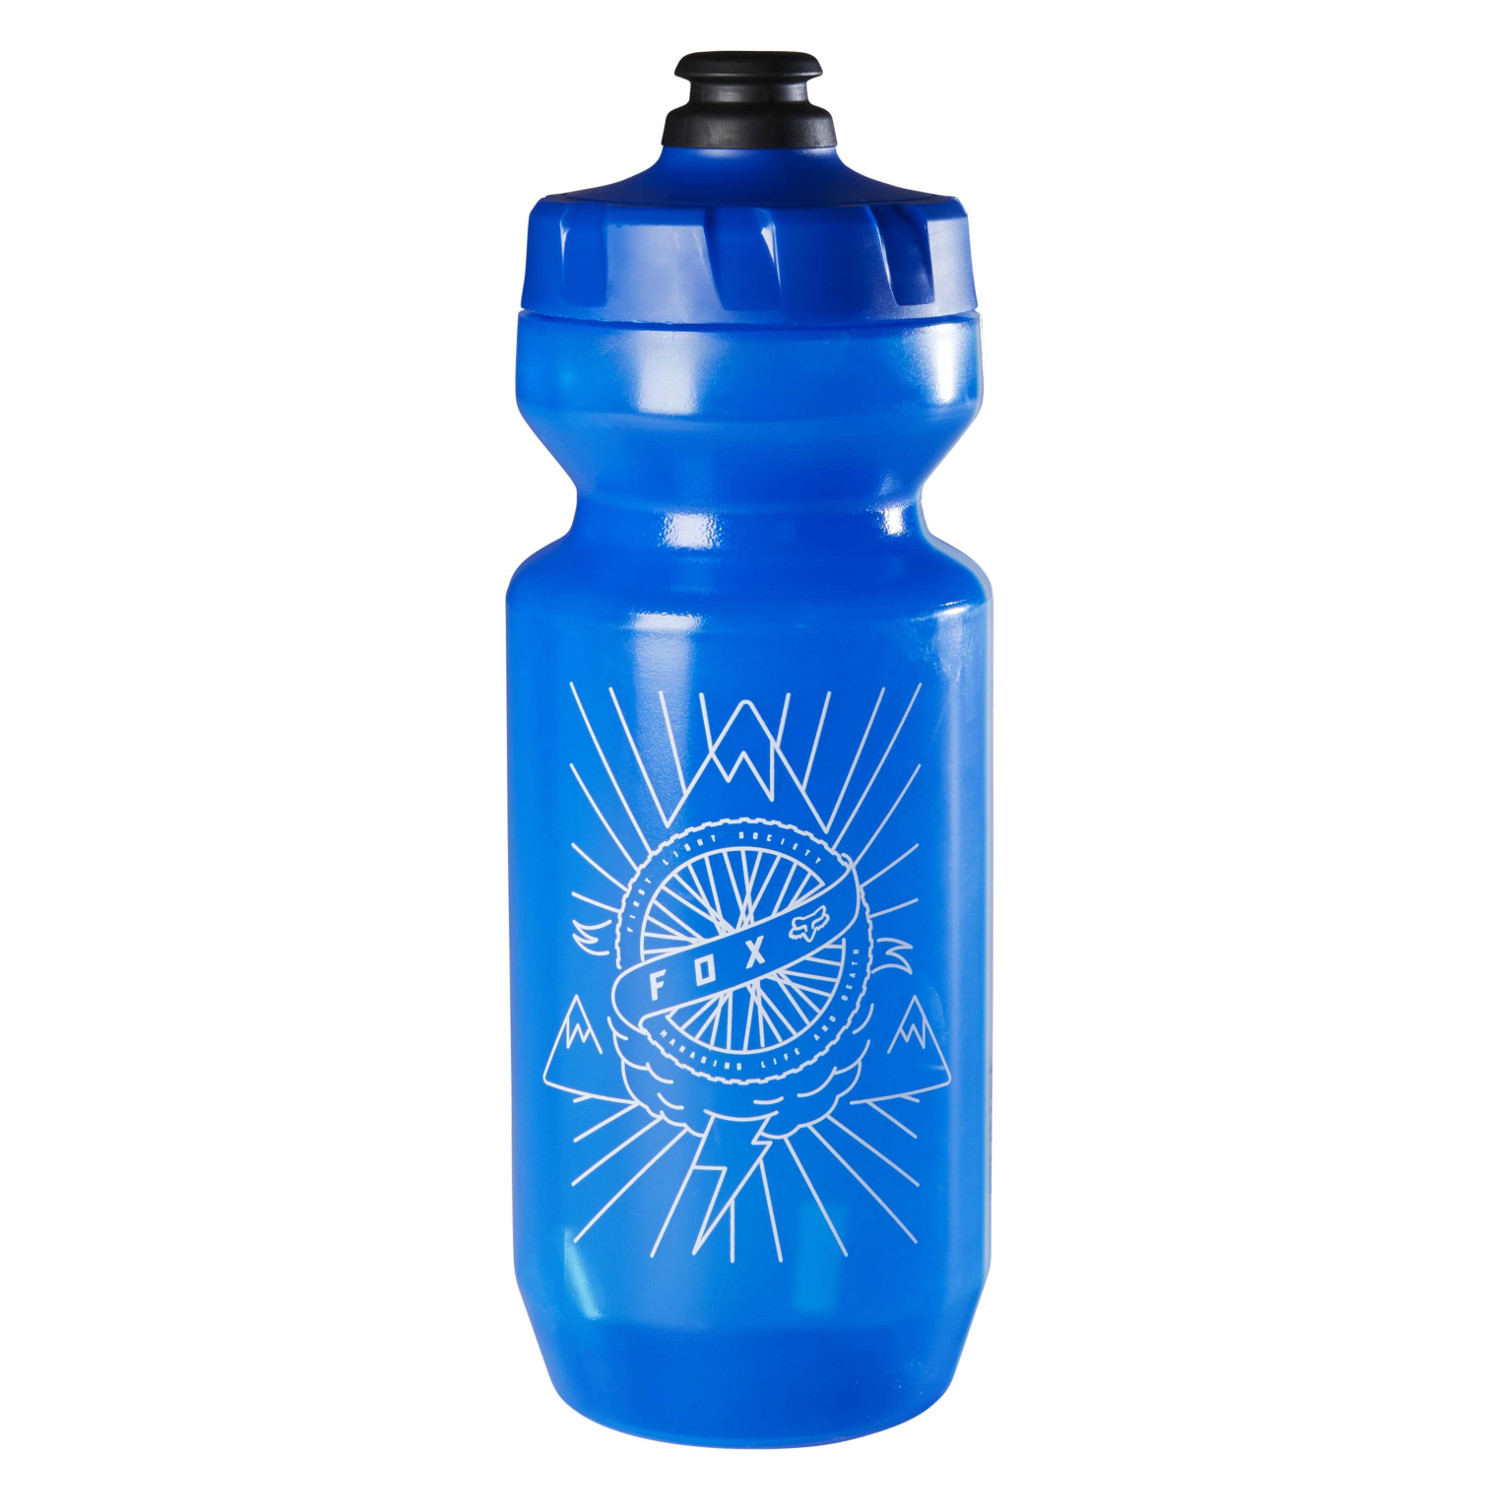 Fox Water Bottle Purist FLS 22 Blue